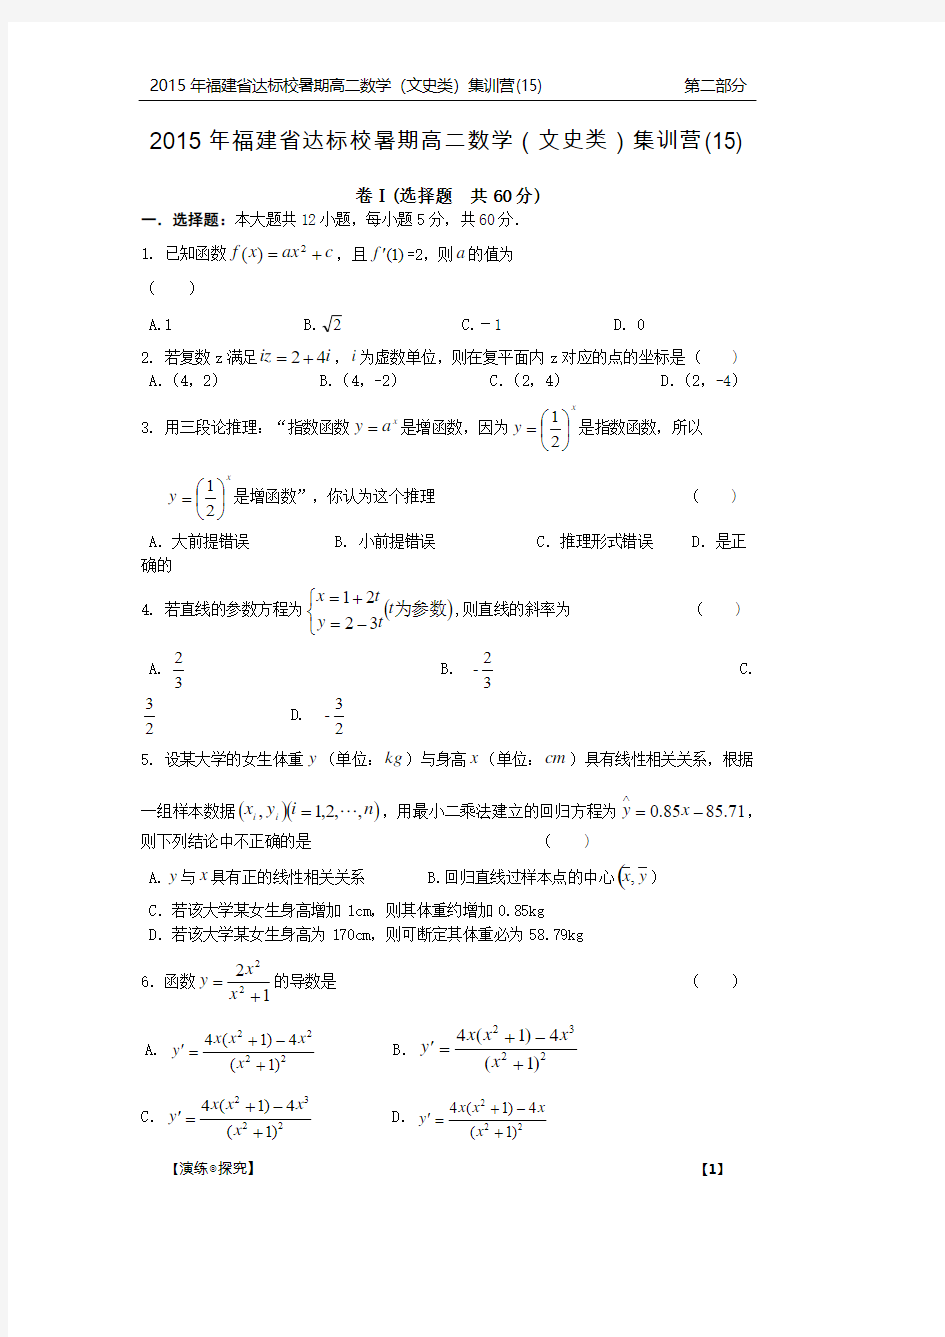 福建省达标校高二数学暑期集训营试题(十五)文(PDF)